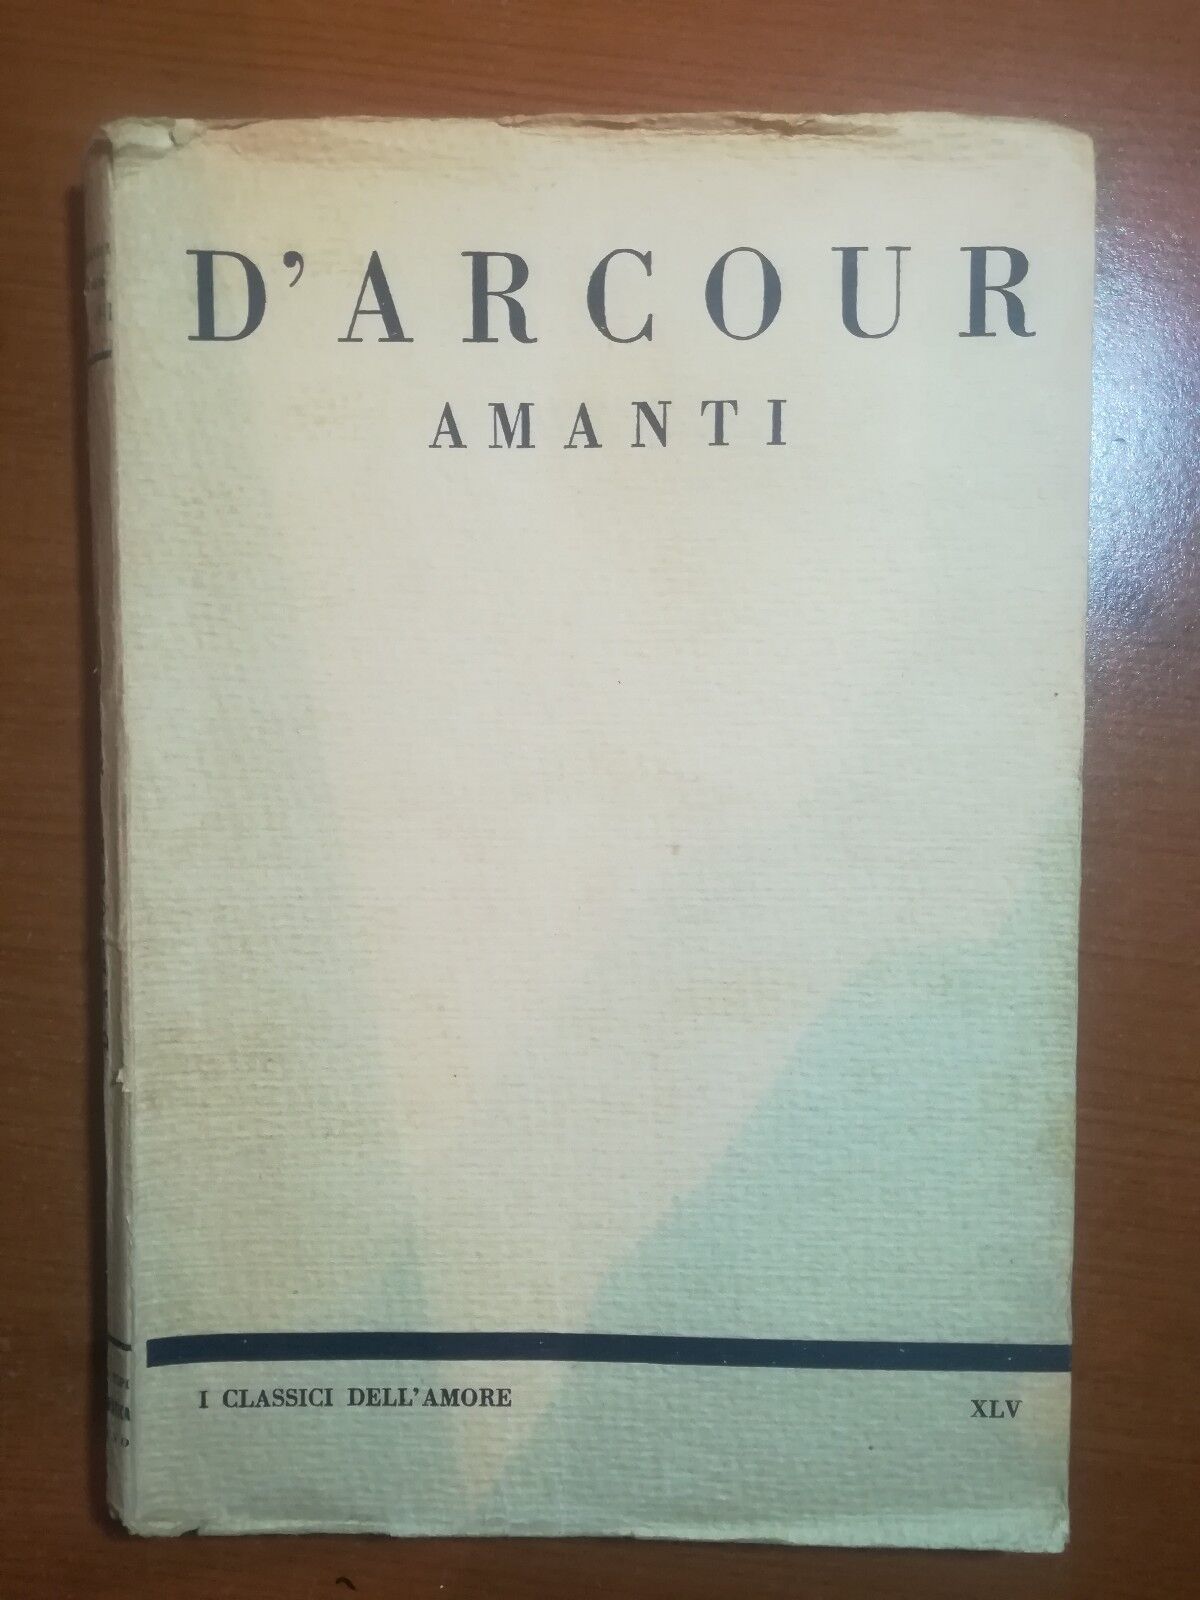 Amanti - D'Arcour - L'aristocratica - 1927 - M